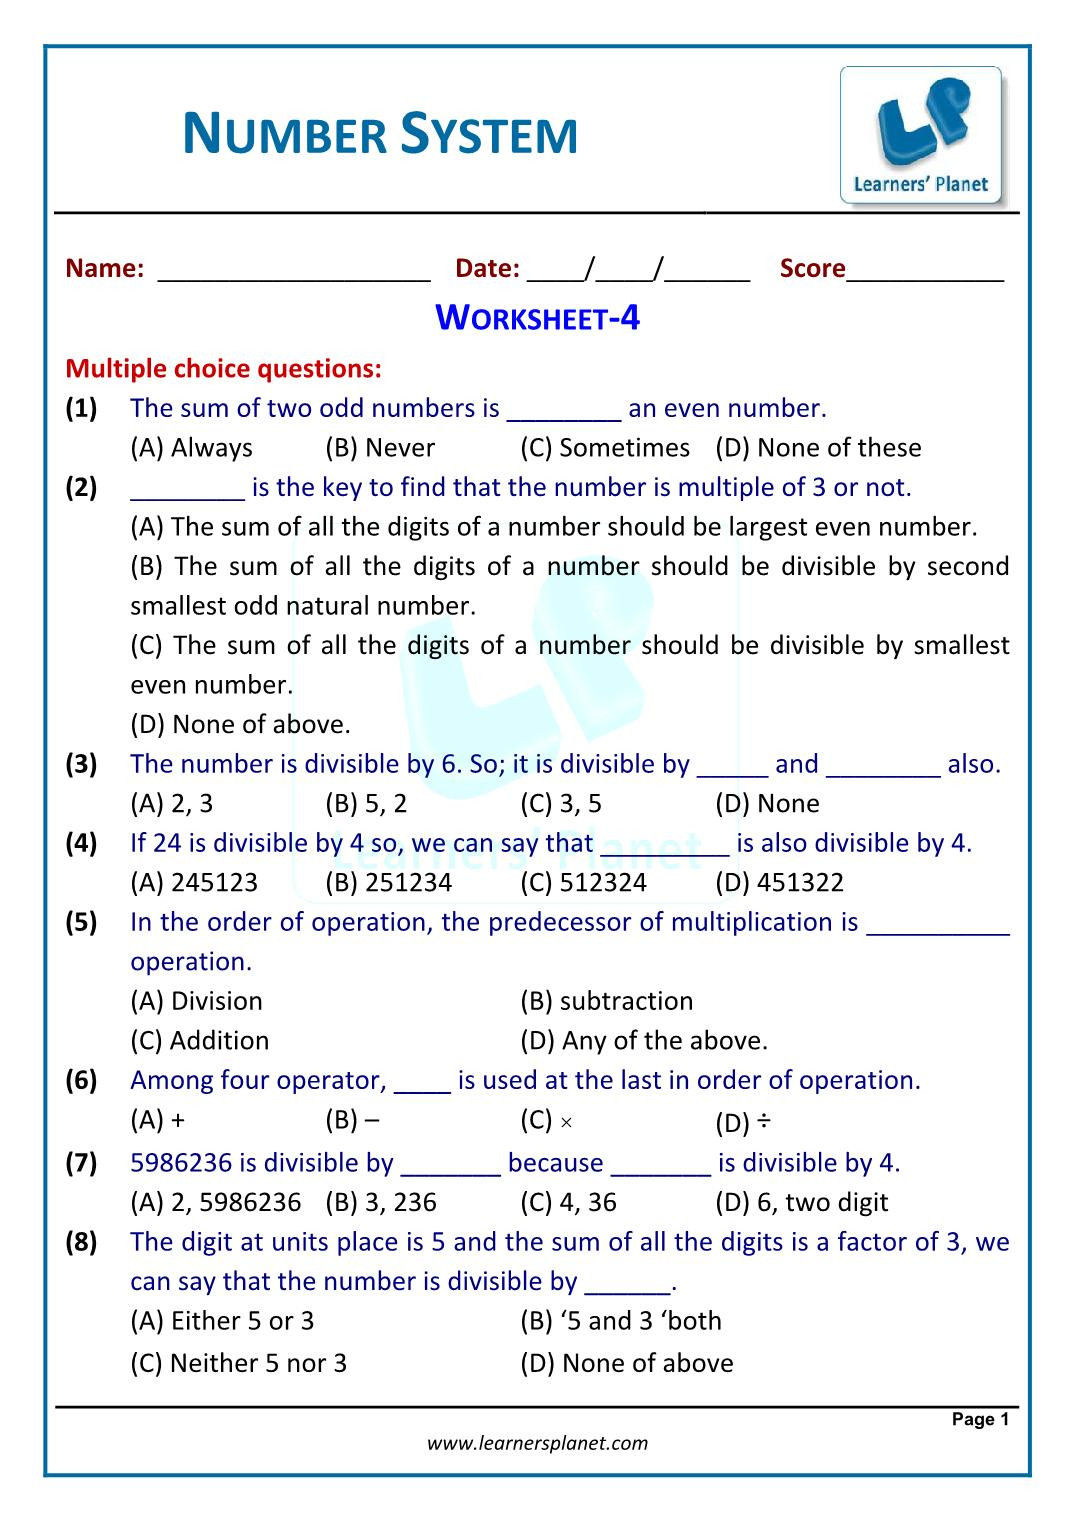 Real Number System Worksheet Number System Chapter Worksheets for Cbse